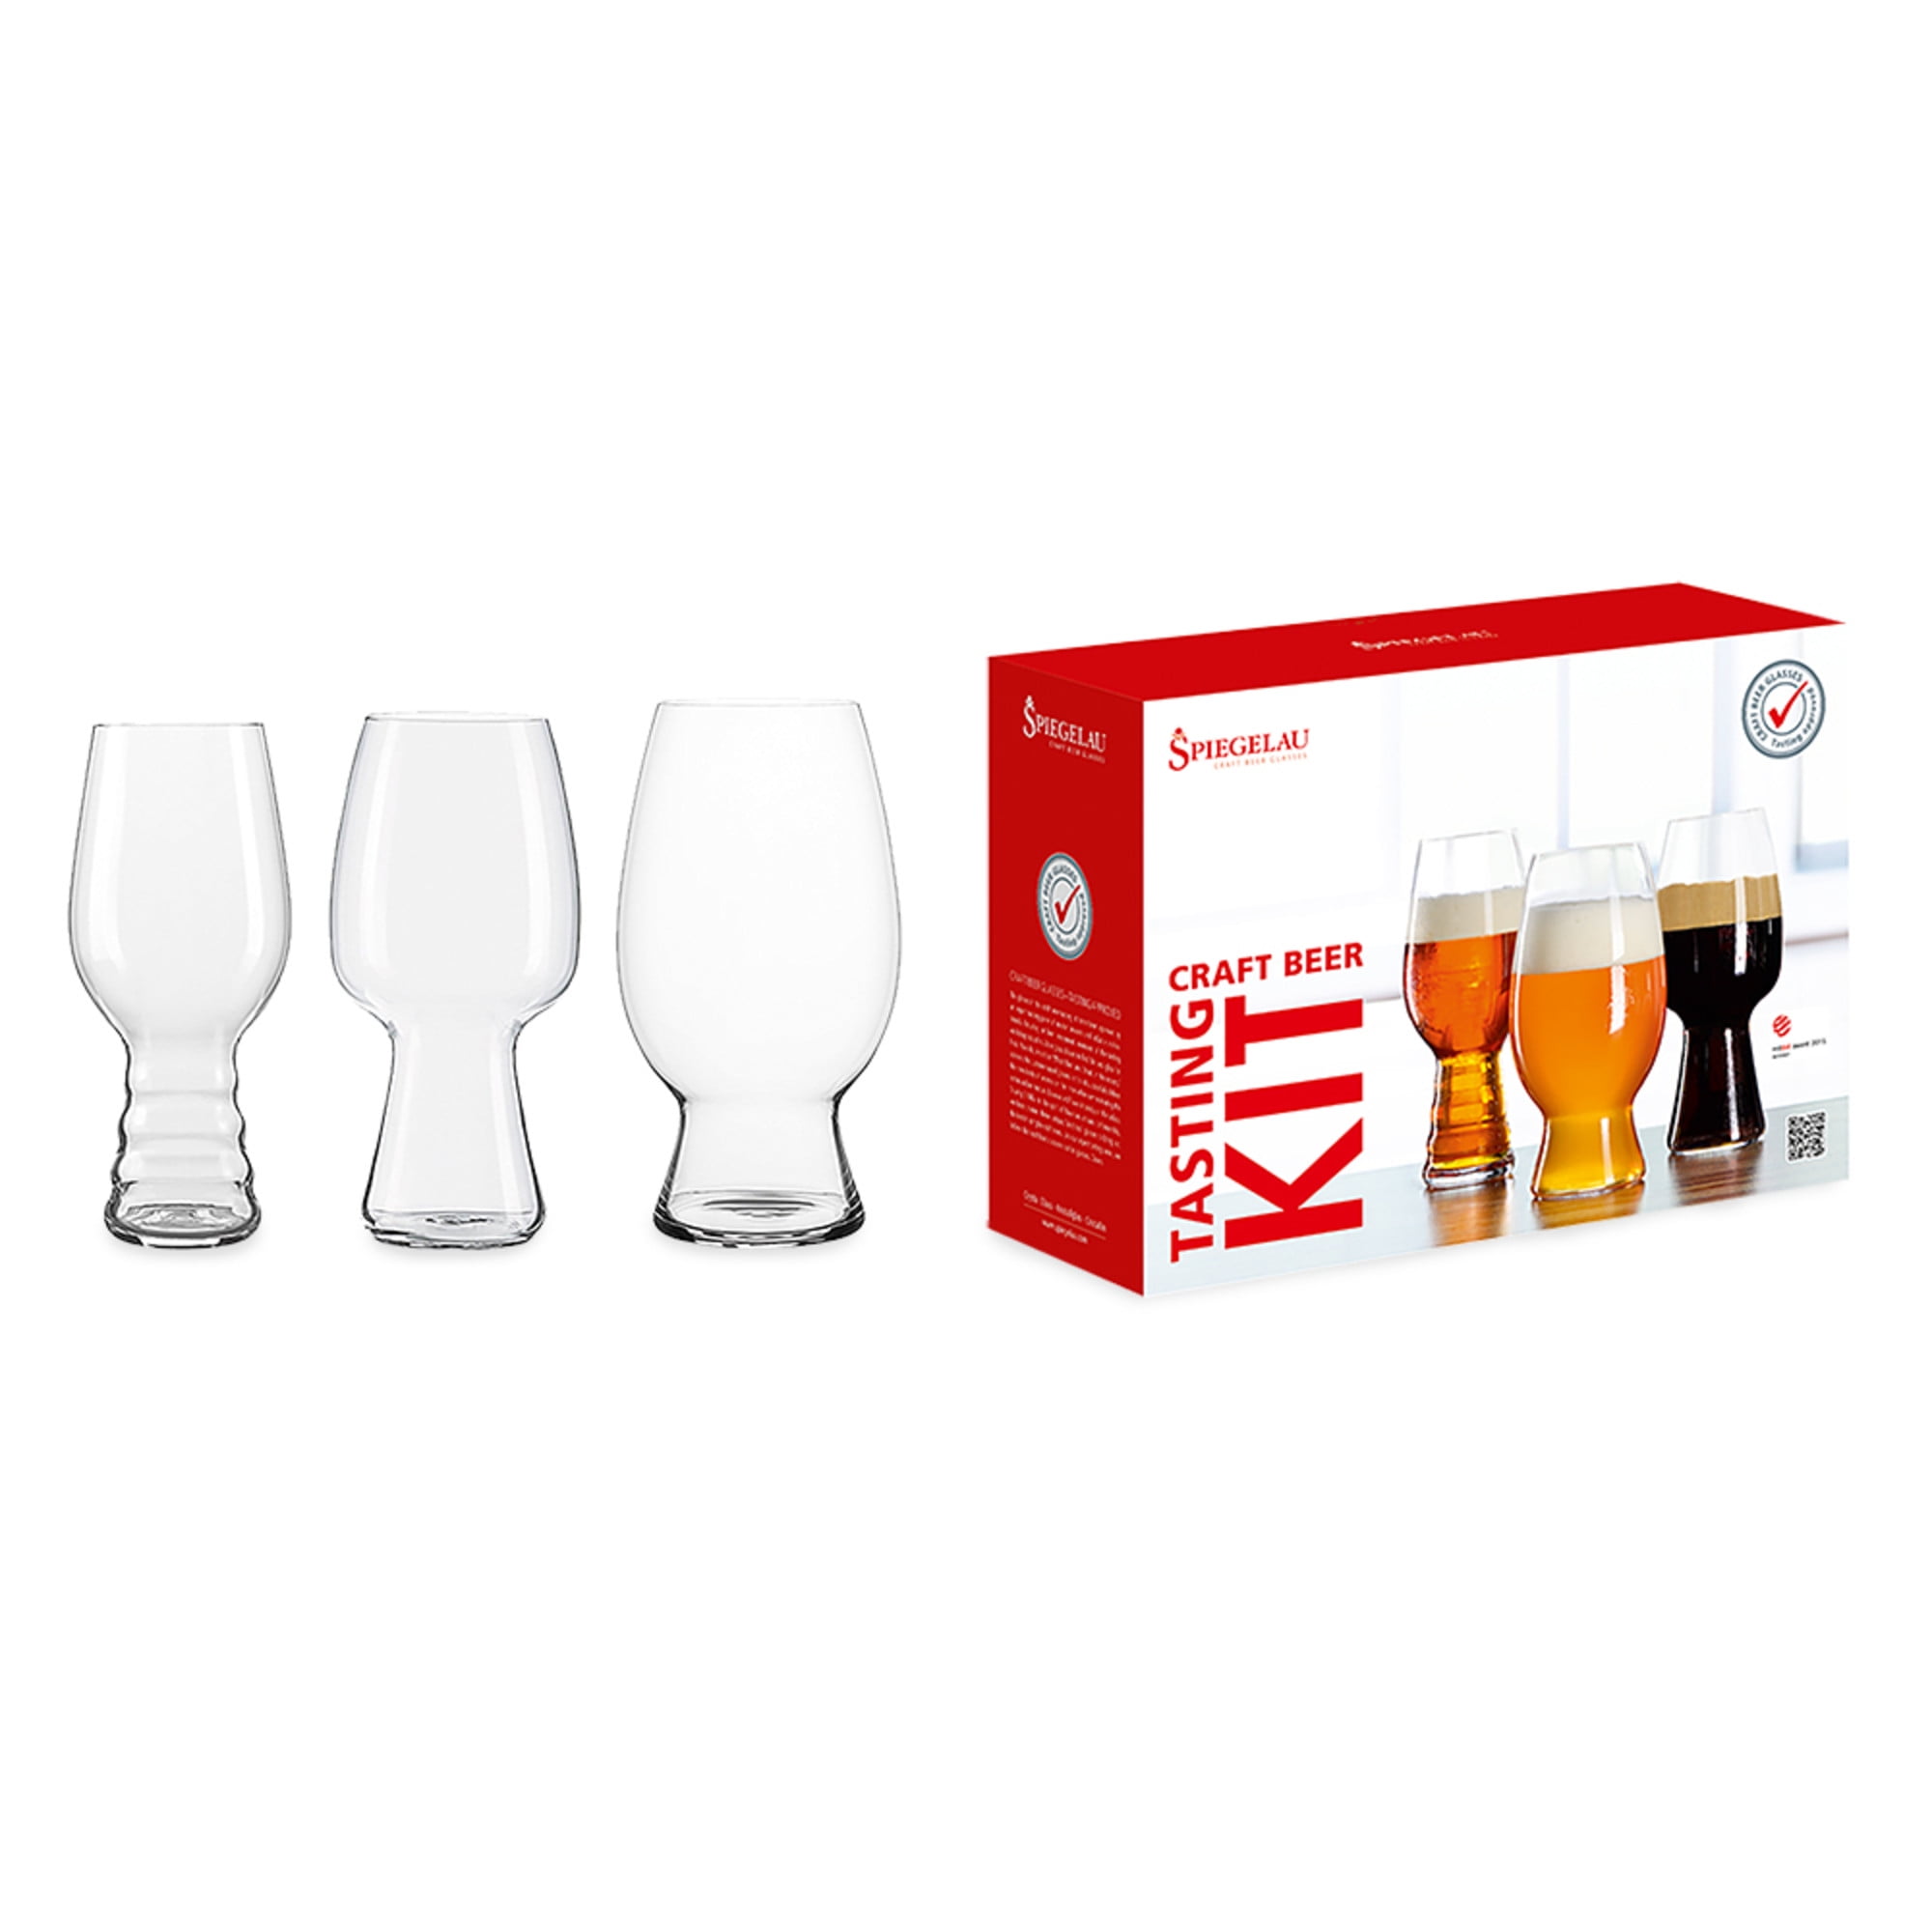 Spiegelau Craft Beer GlassTasting Kit (Set of 3)